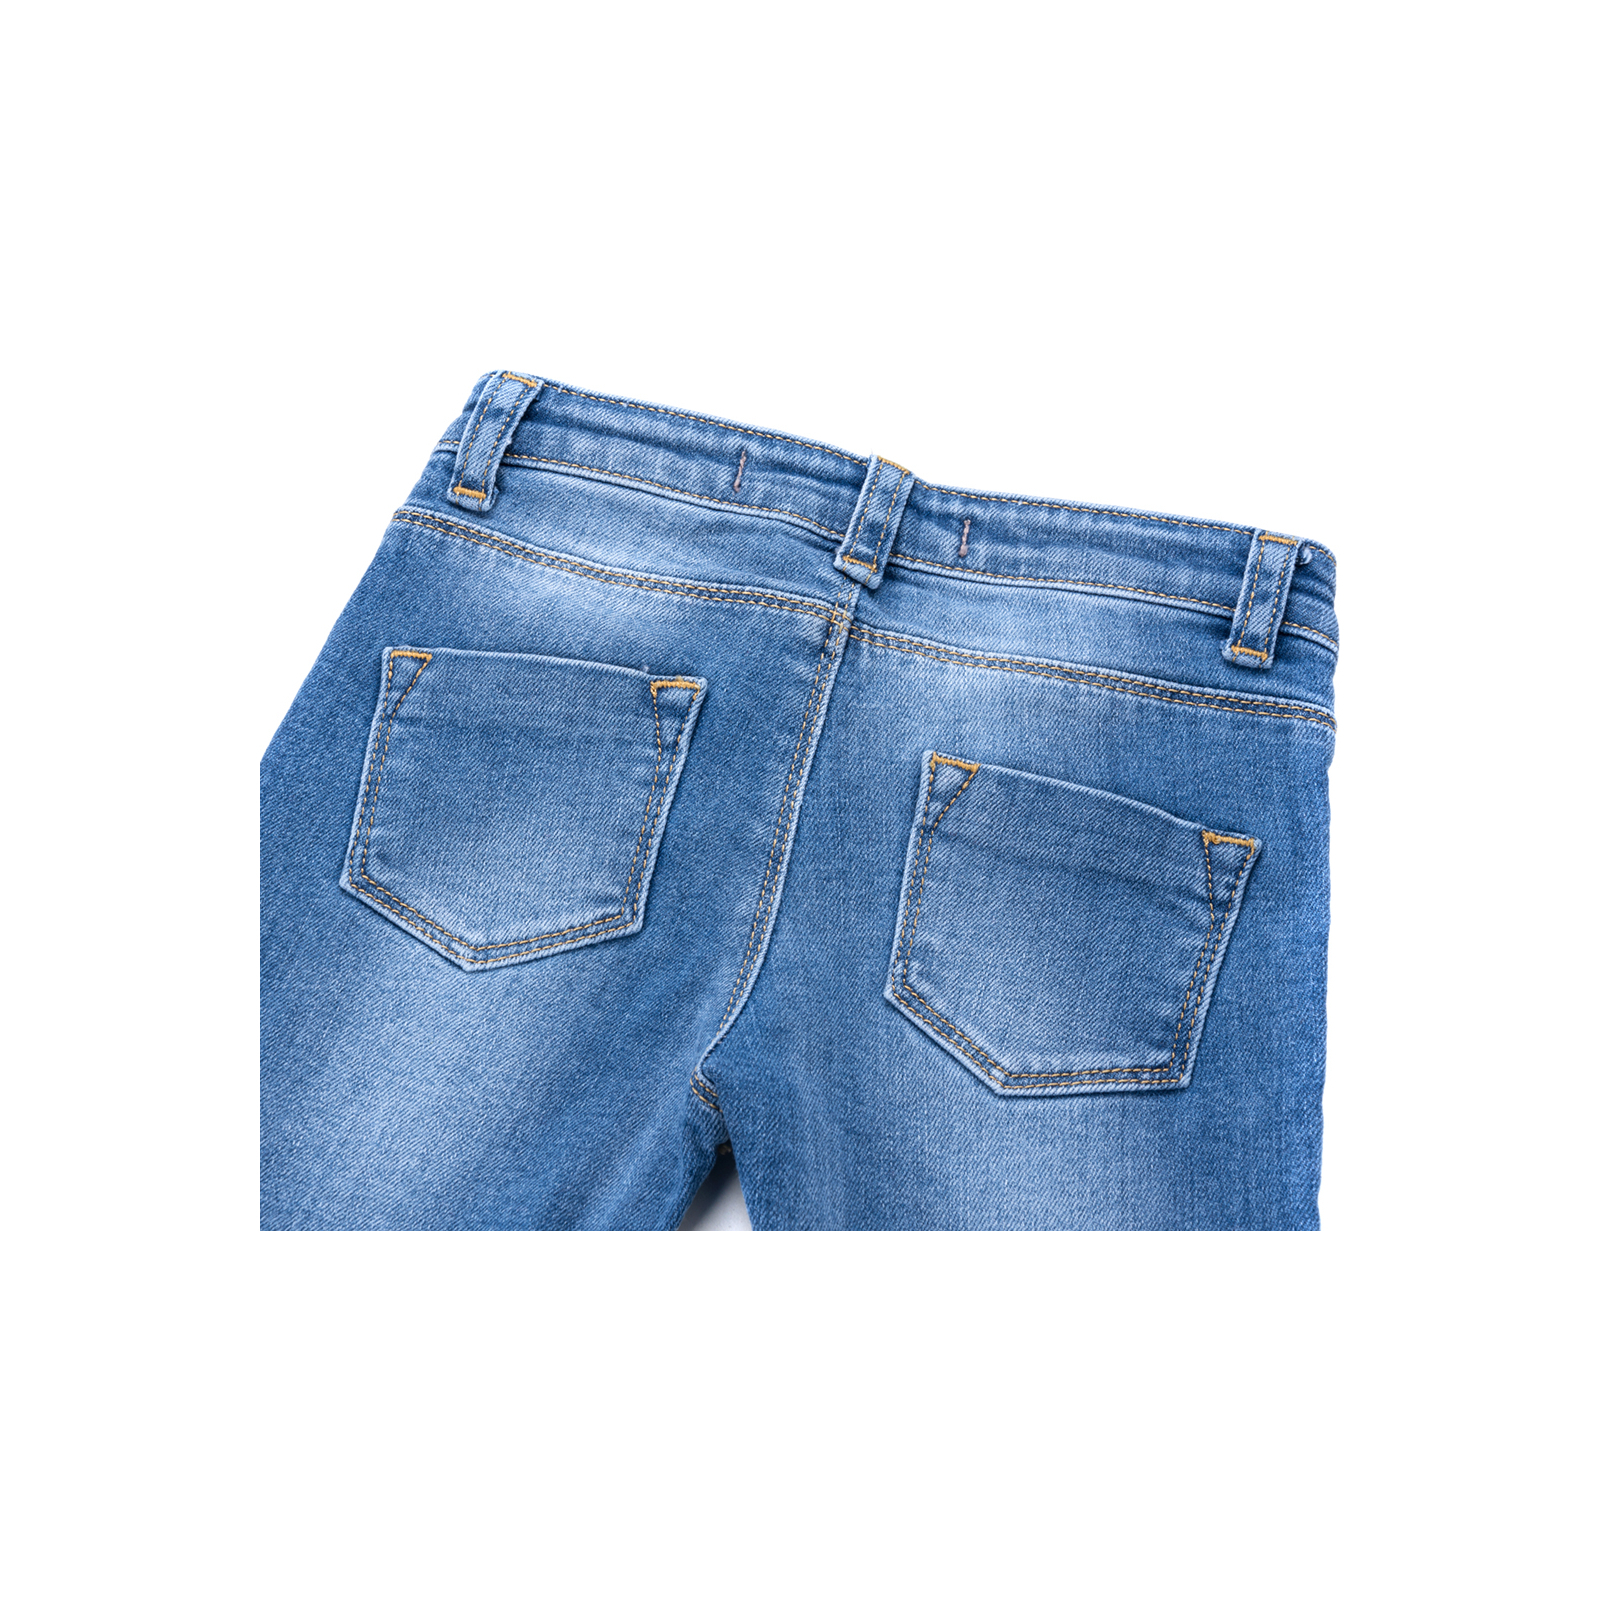 Джинсы Breeze джинсовые с цветочками (OZ-17703-74G-jeans) изображение 5